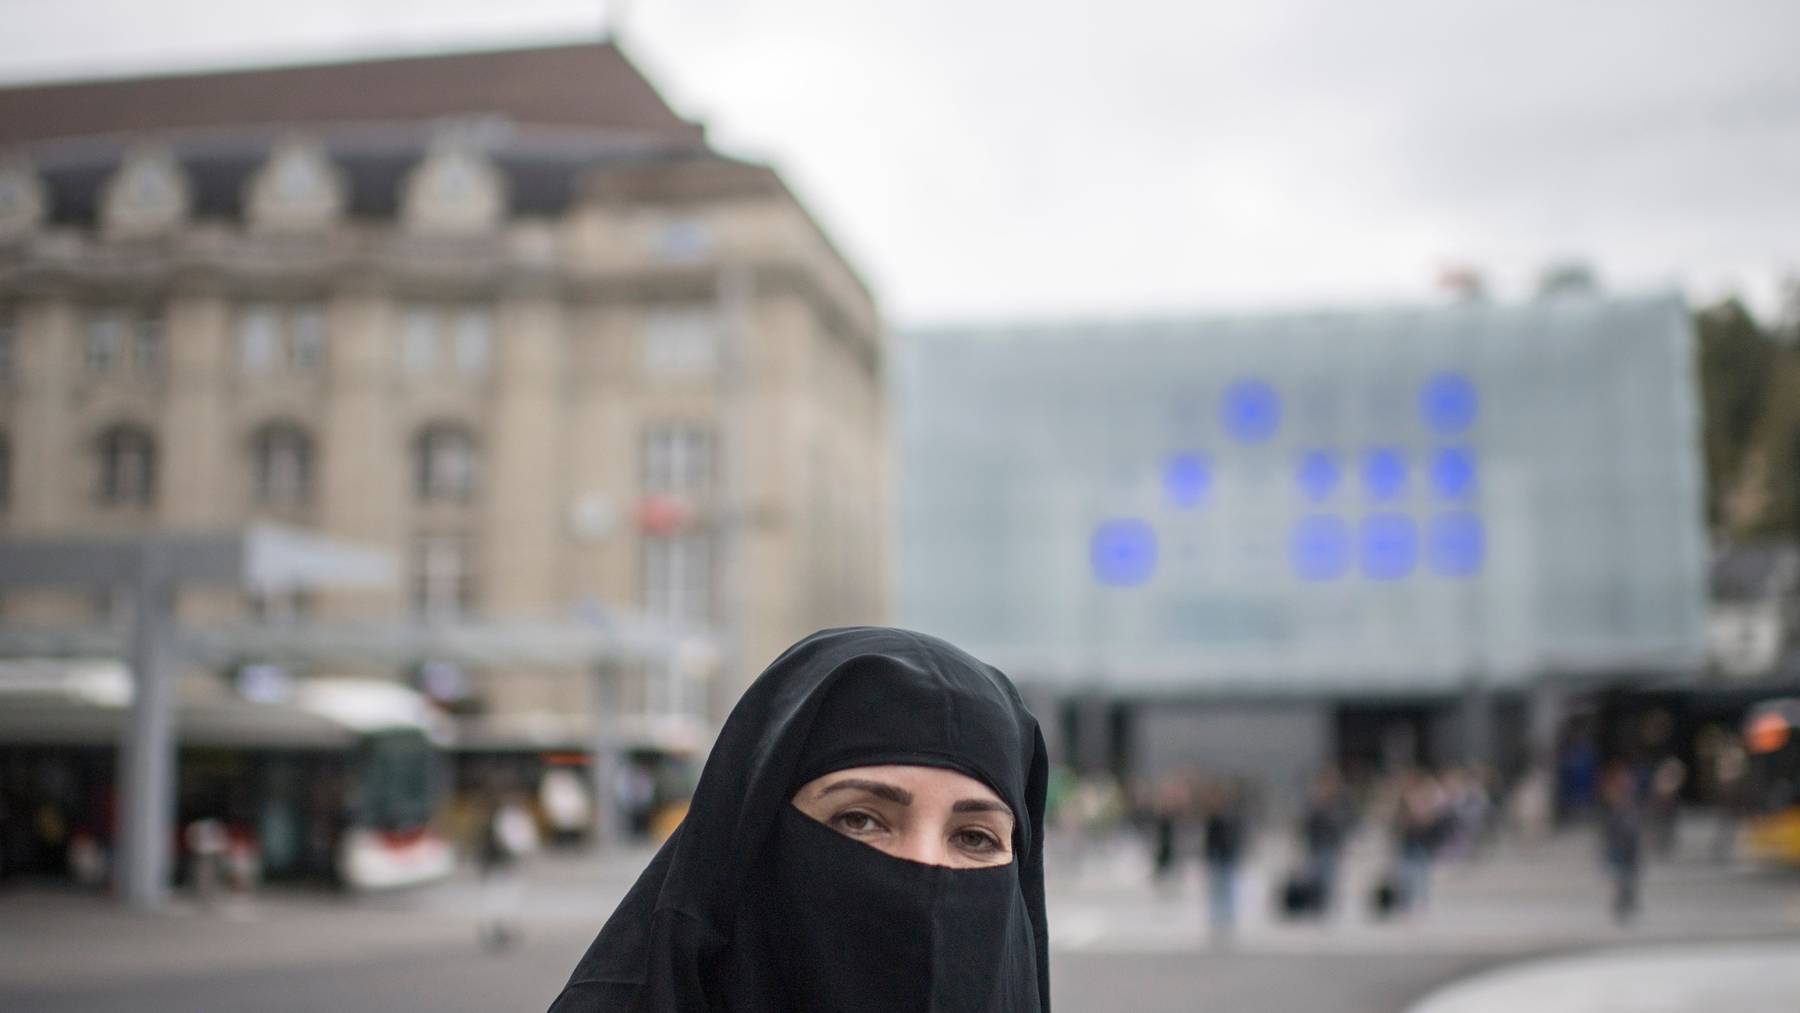 Dürfen Frauen aus religiösen Gründen ihr Gesicht verhüllen? Nein, findet die Burka-Initiative. Das Parlament sieht es anders, aber hat Handlungsbedarf erkannt. (Symbolbild)